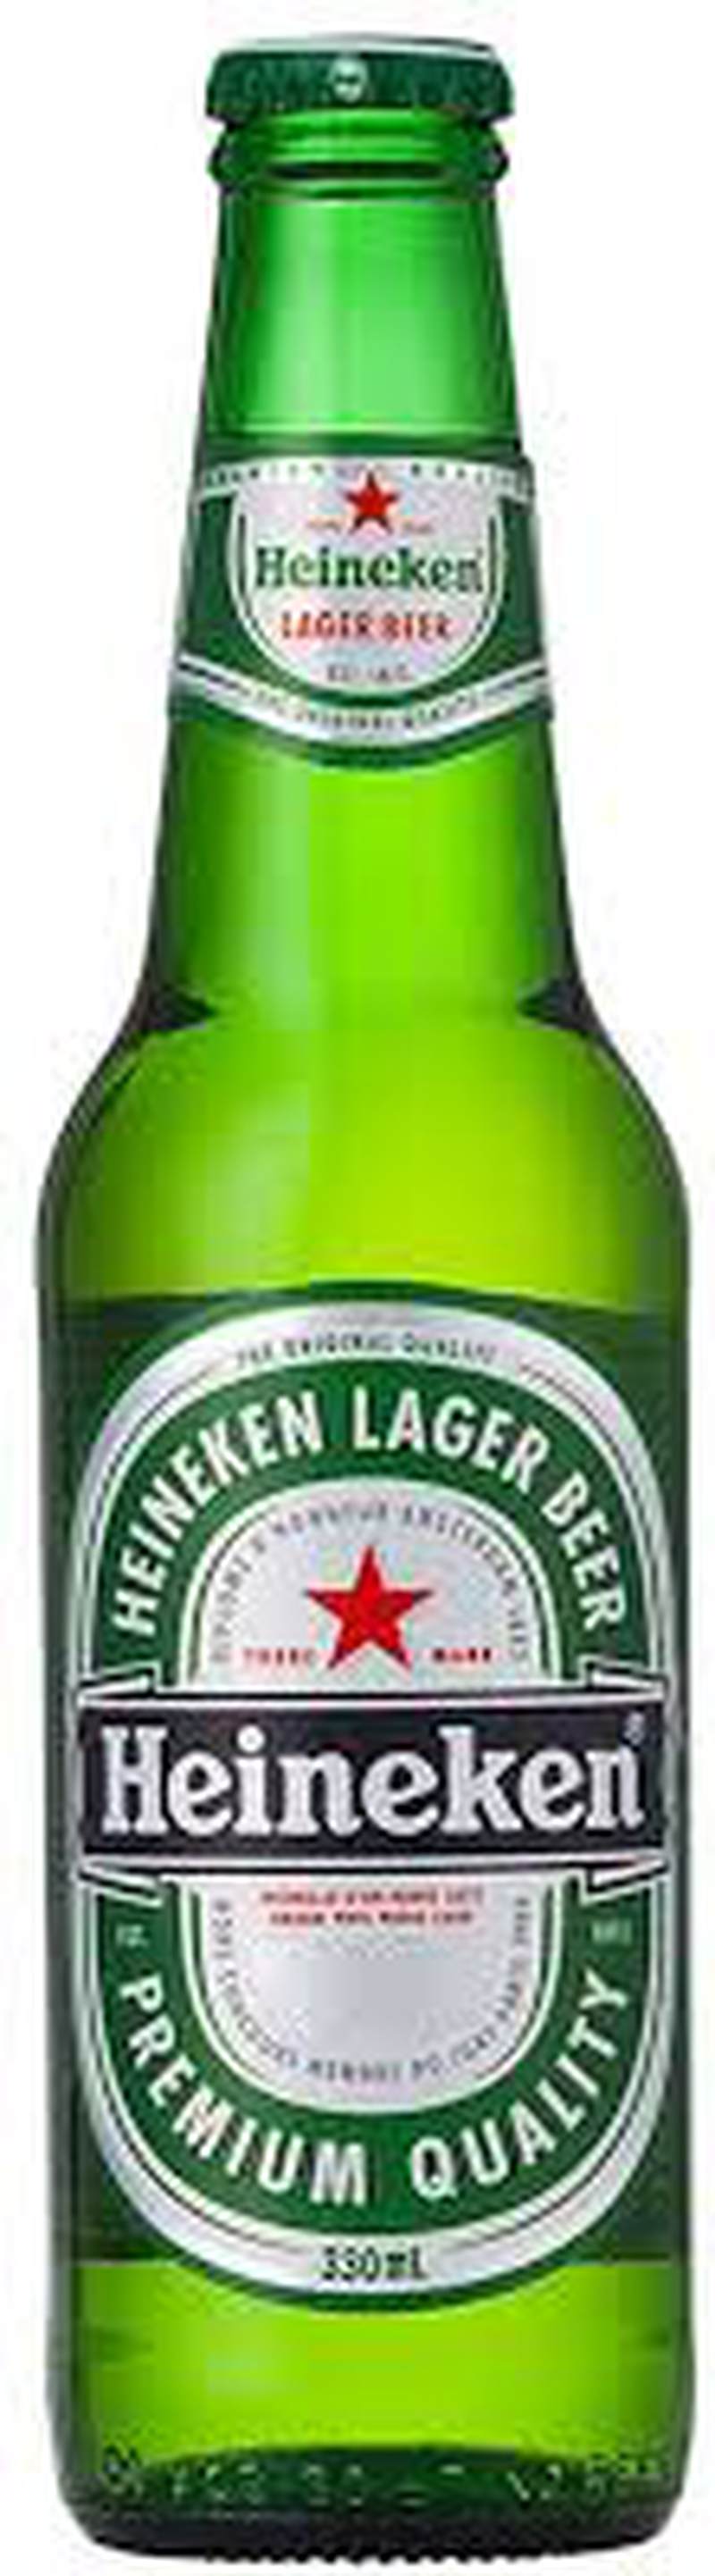 Пиво Хайнекен 0,5л